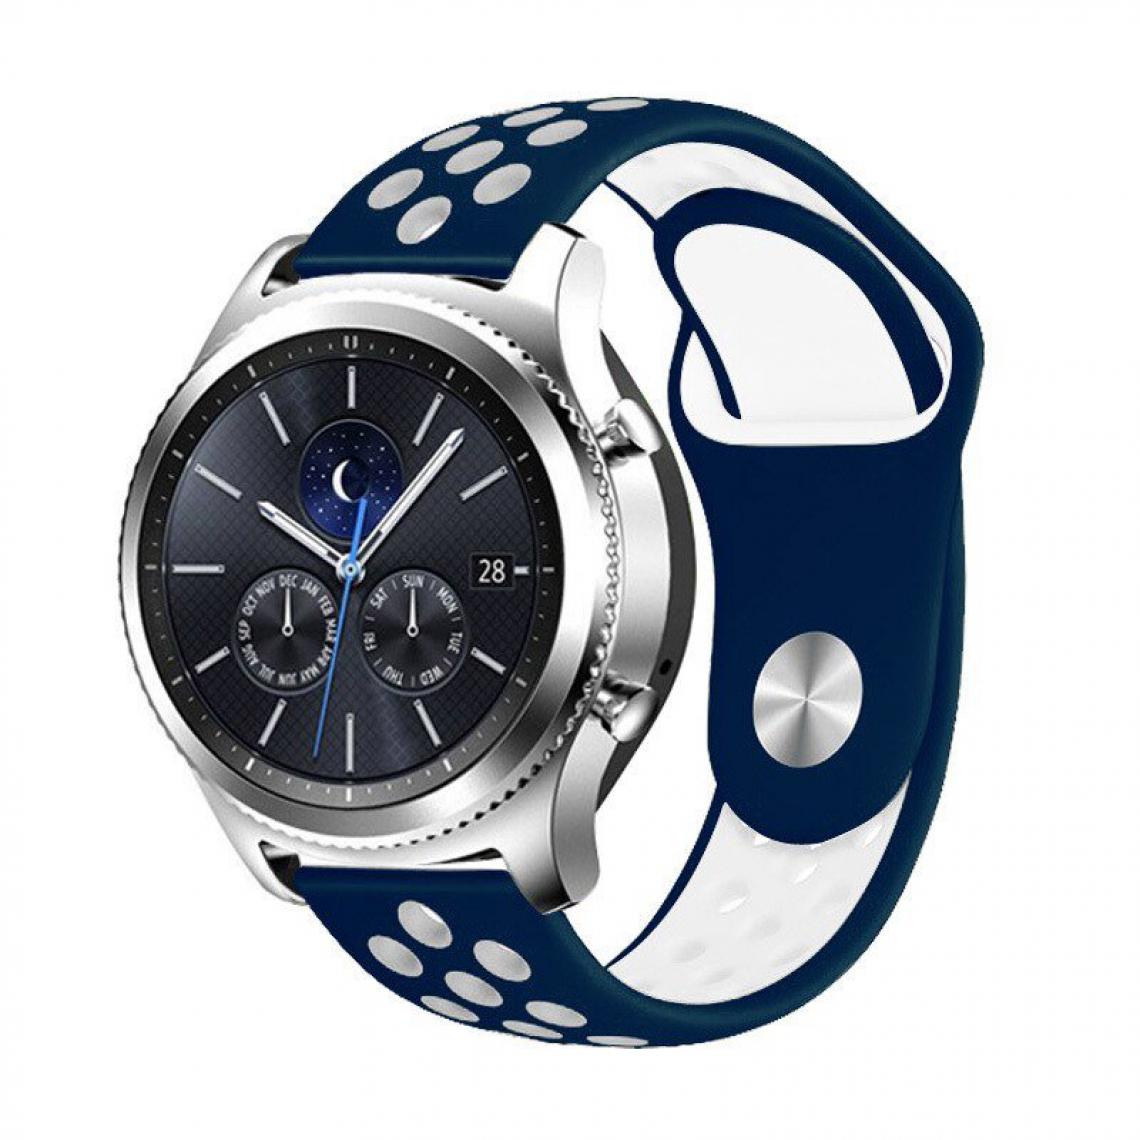 Phonecare - Bracelet SportyStyle pour Garmin Approach S62 - Bleu foncé / Blanc - Autres accessoires smartphone